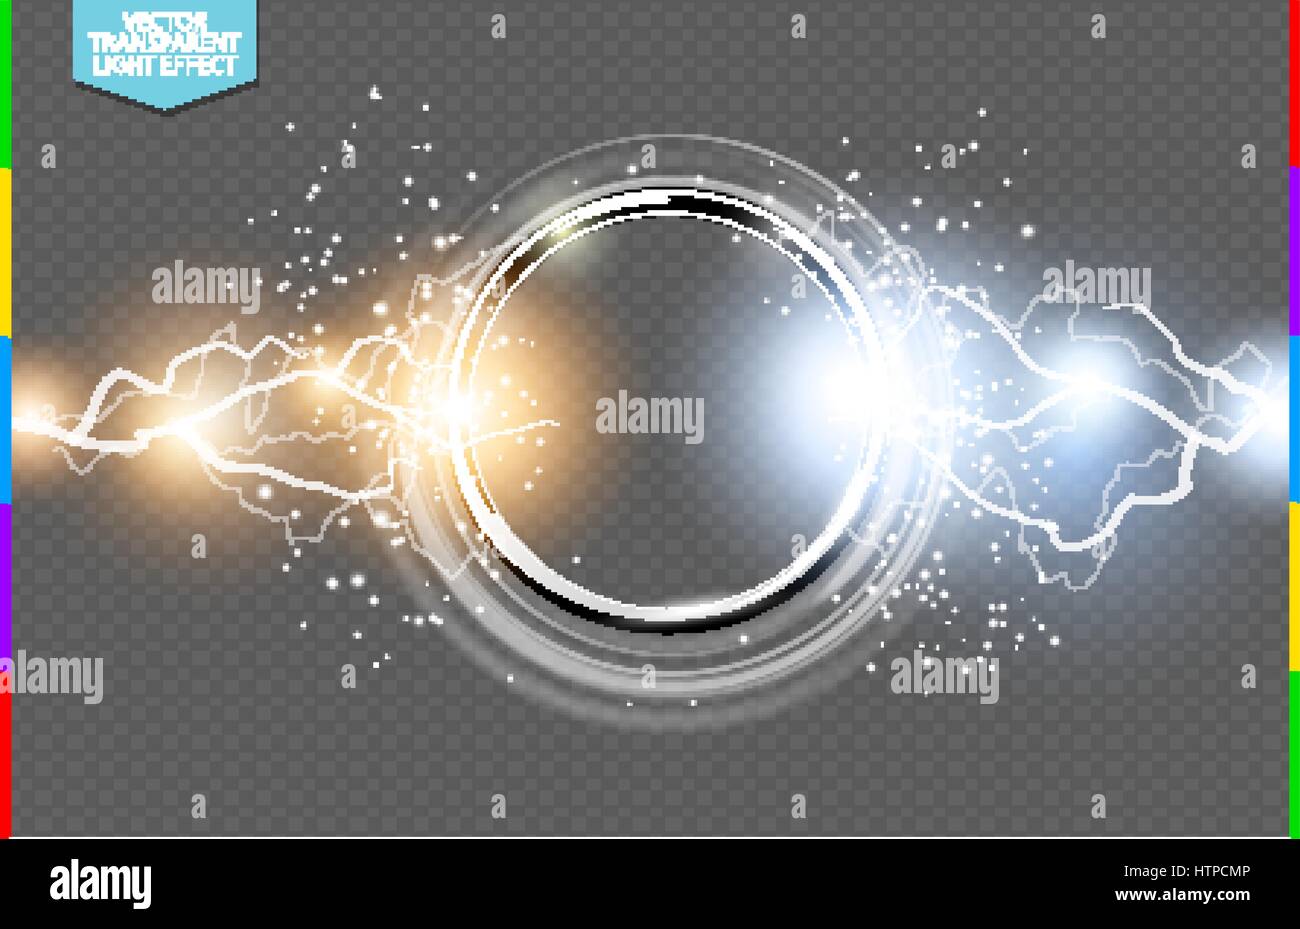 Abstrakte Metall Chrom Ring macht Wissenschaft transparenten Hintergrund. Elektrische Leuchten Runde Tech Rahmen, Energie Blitze. Lichteffekt mit Funken Stock Vektor